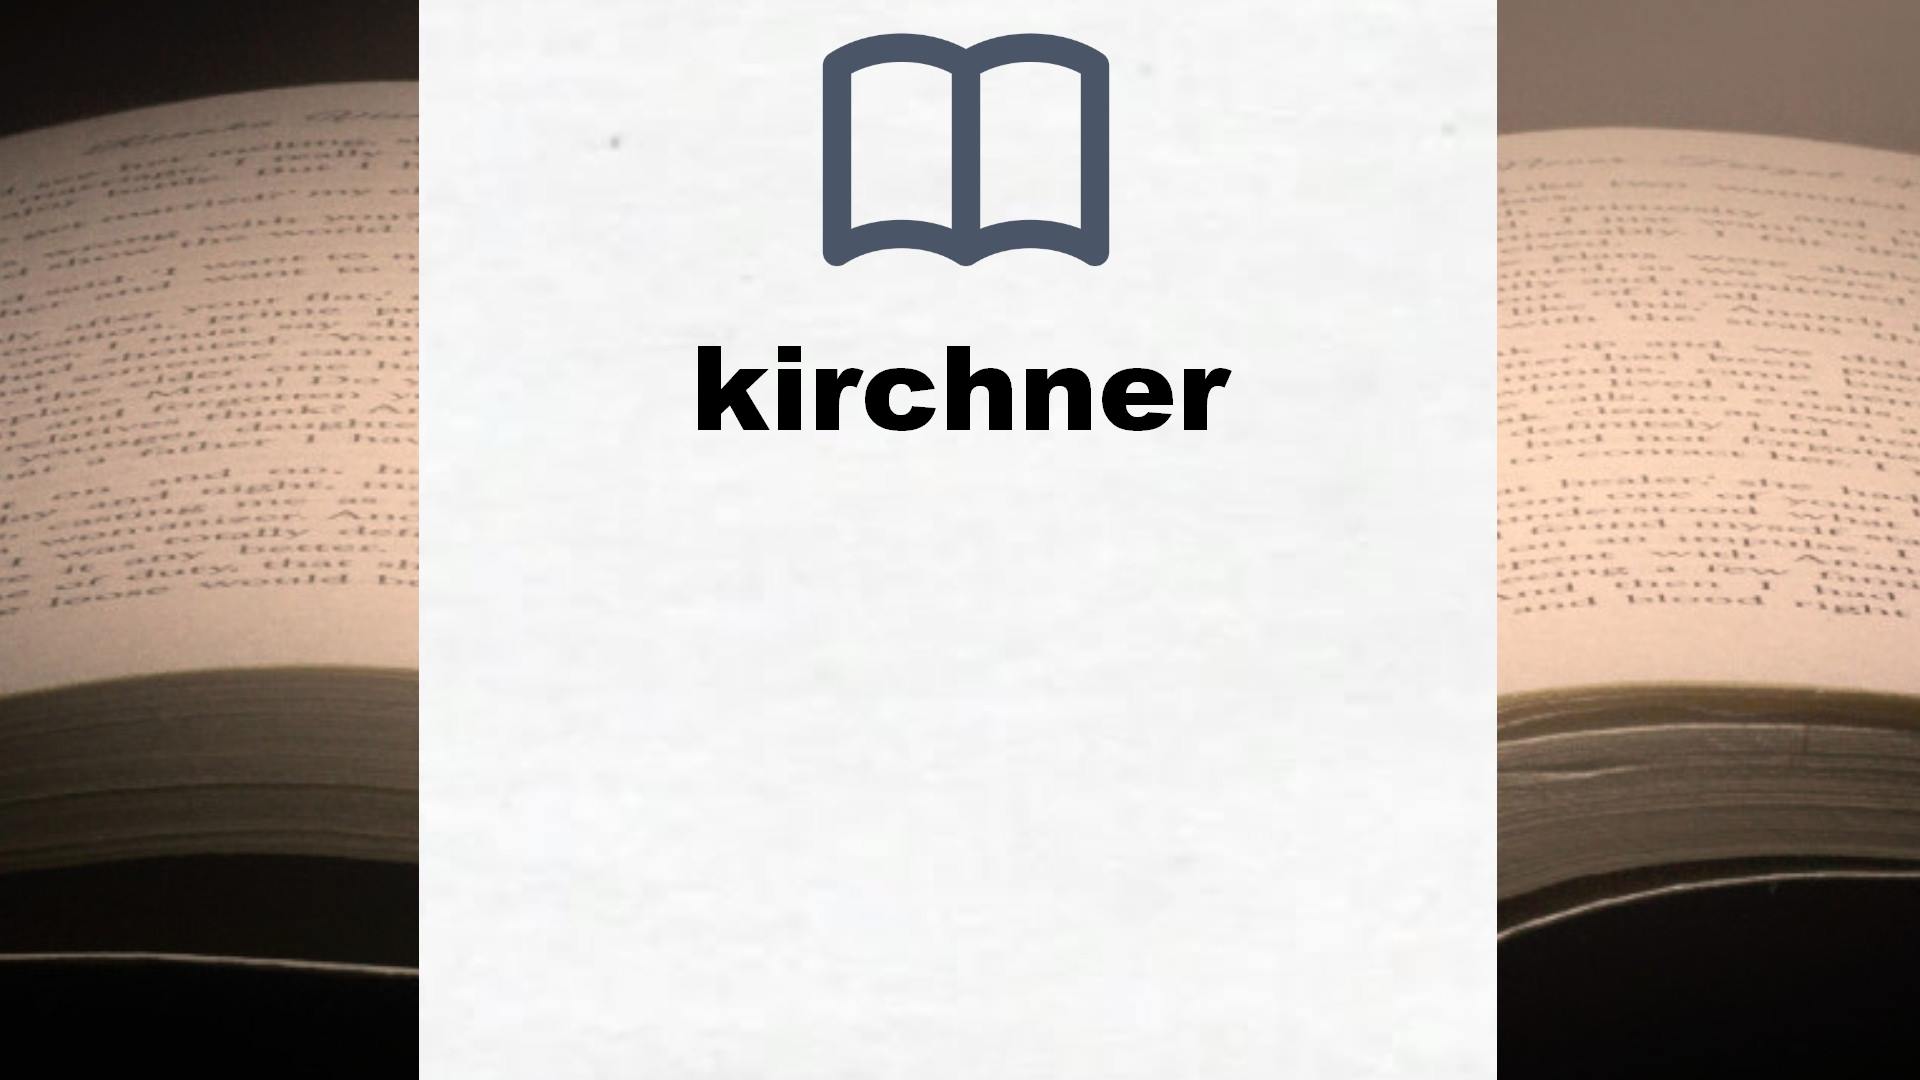 Libros sobre kirchner